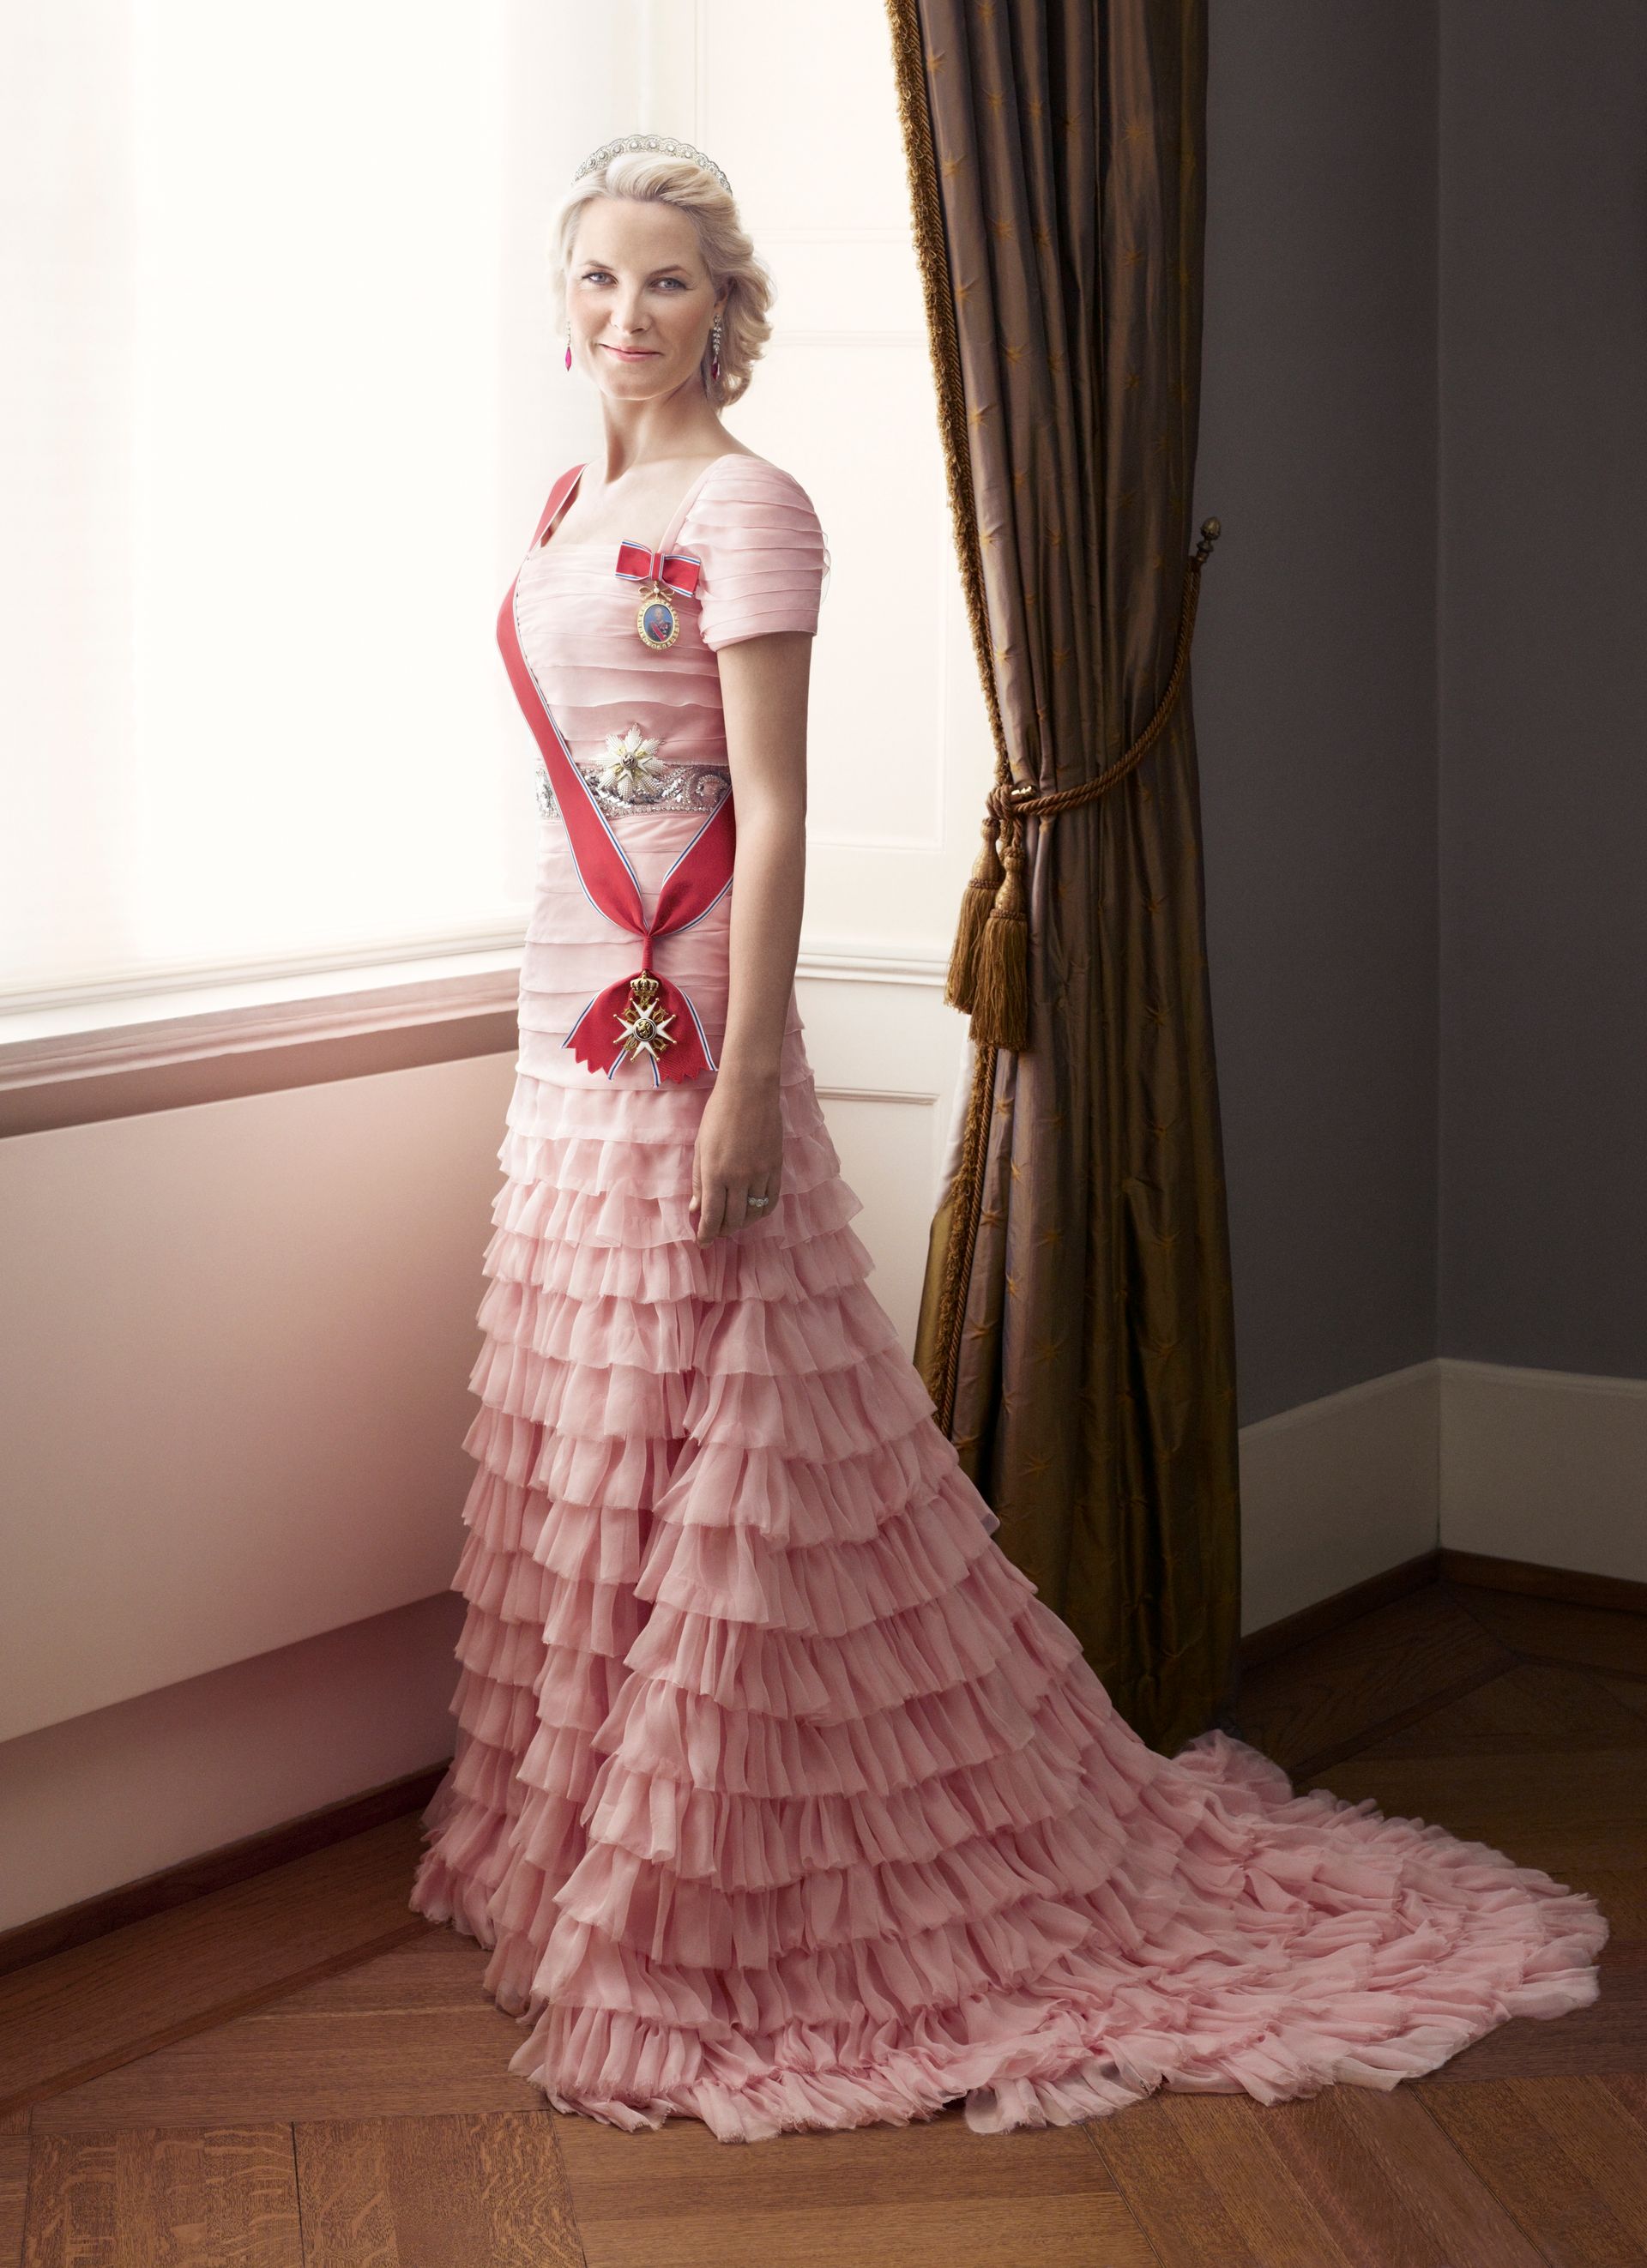 Mette-Marit-galaportret-roze-jurk